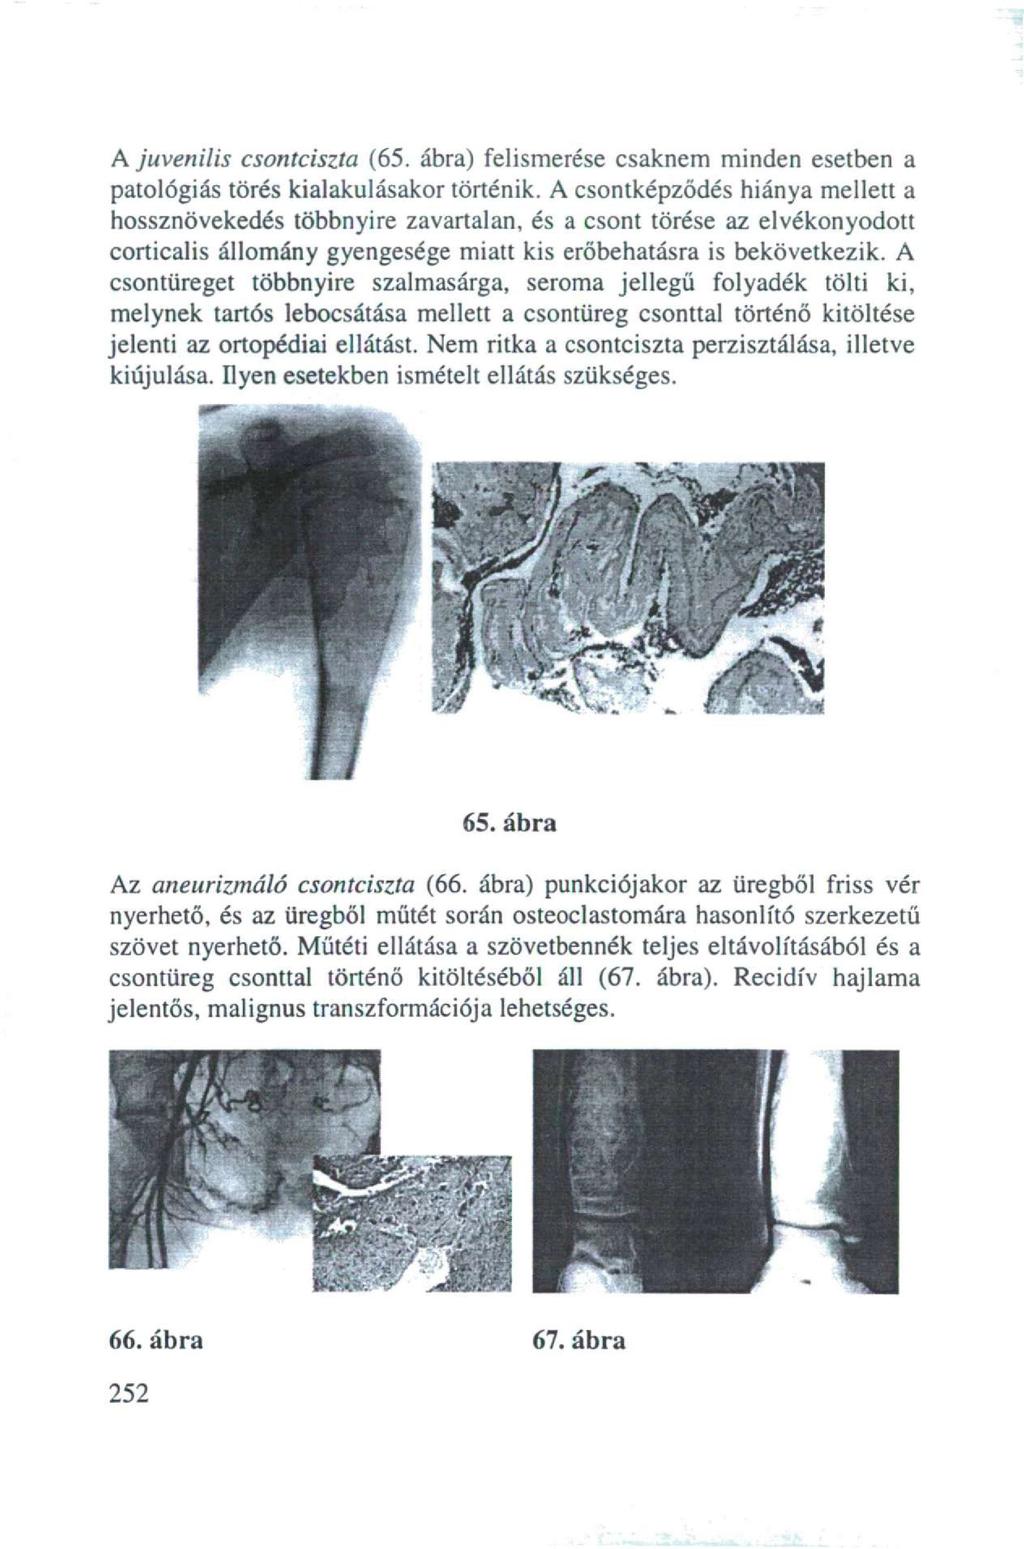 A juvenilis csontciszta (65. ábra) felismerése csaknem minden esetben a patológiás törés kialakulásakor történik.